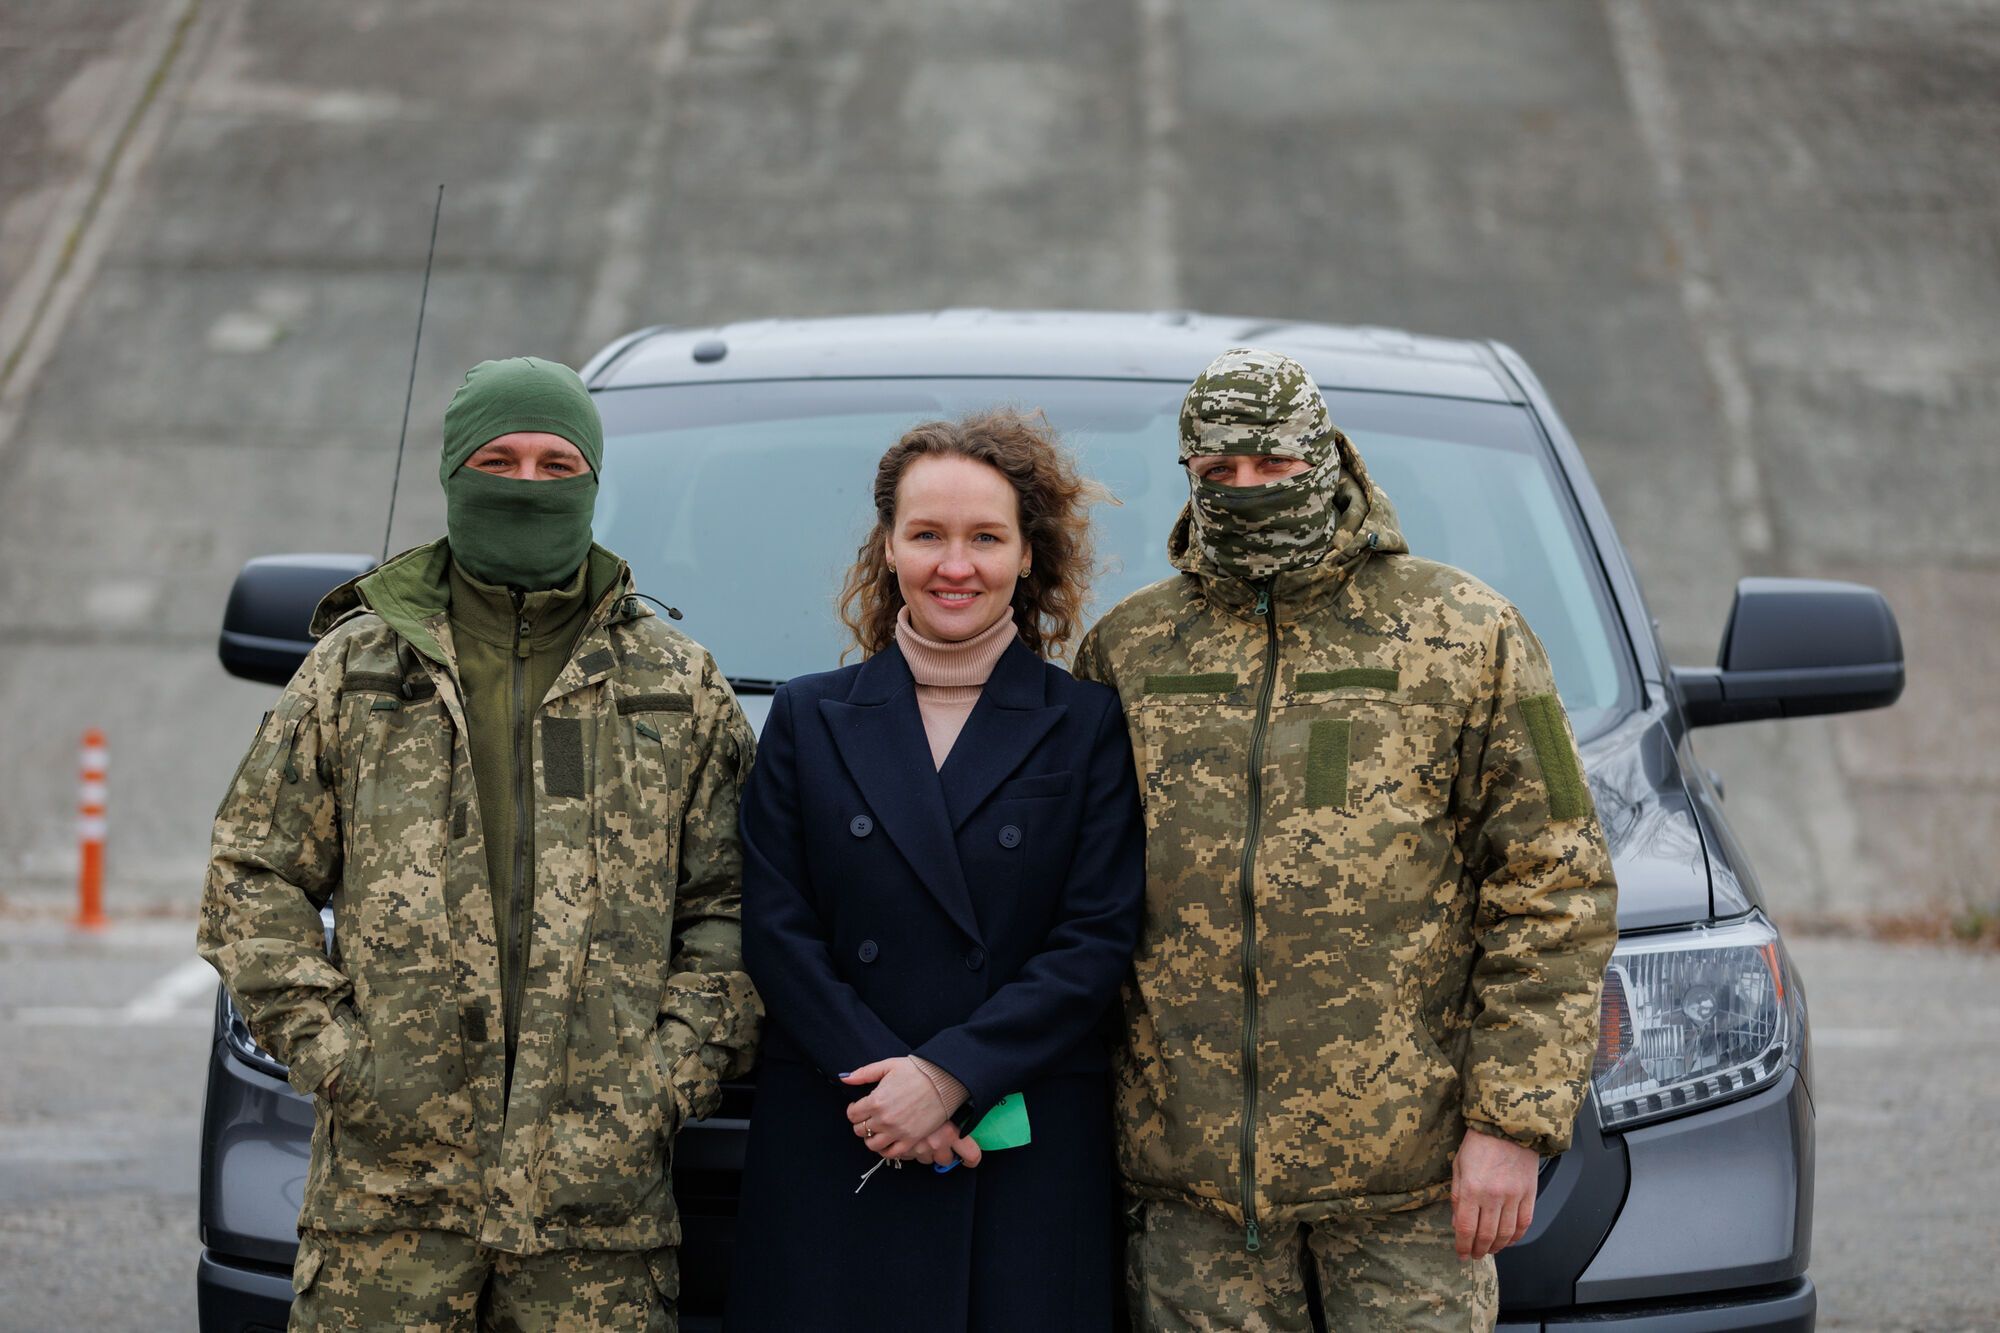 Українські захисники отримали ще п’ять позашляховиків від Фонду Вадима Столара